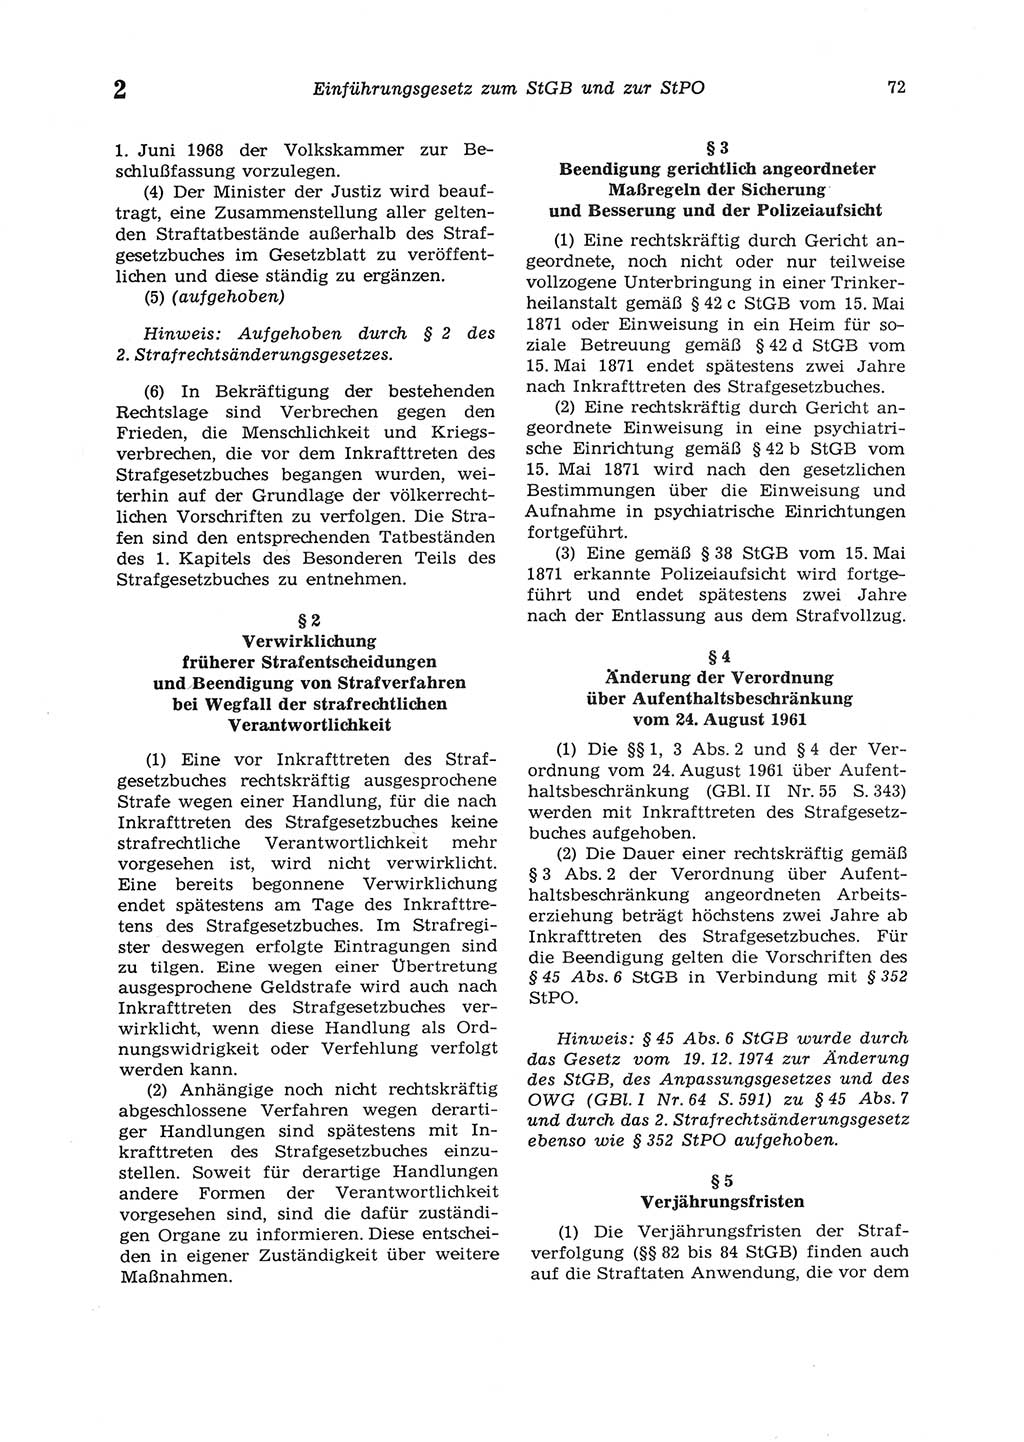 Strafgesetzbuch (StGB) der Deutschen Demokratischen Republik (DDR) 1987, Seite 72 (StGB DDR 1987, S. 72)